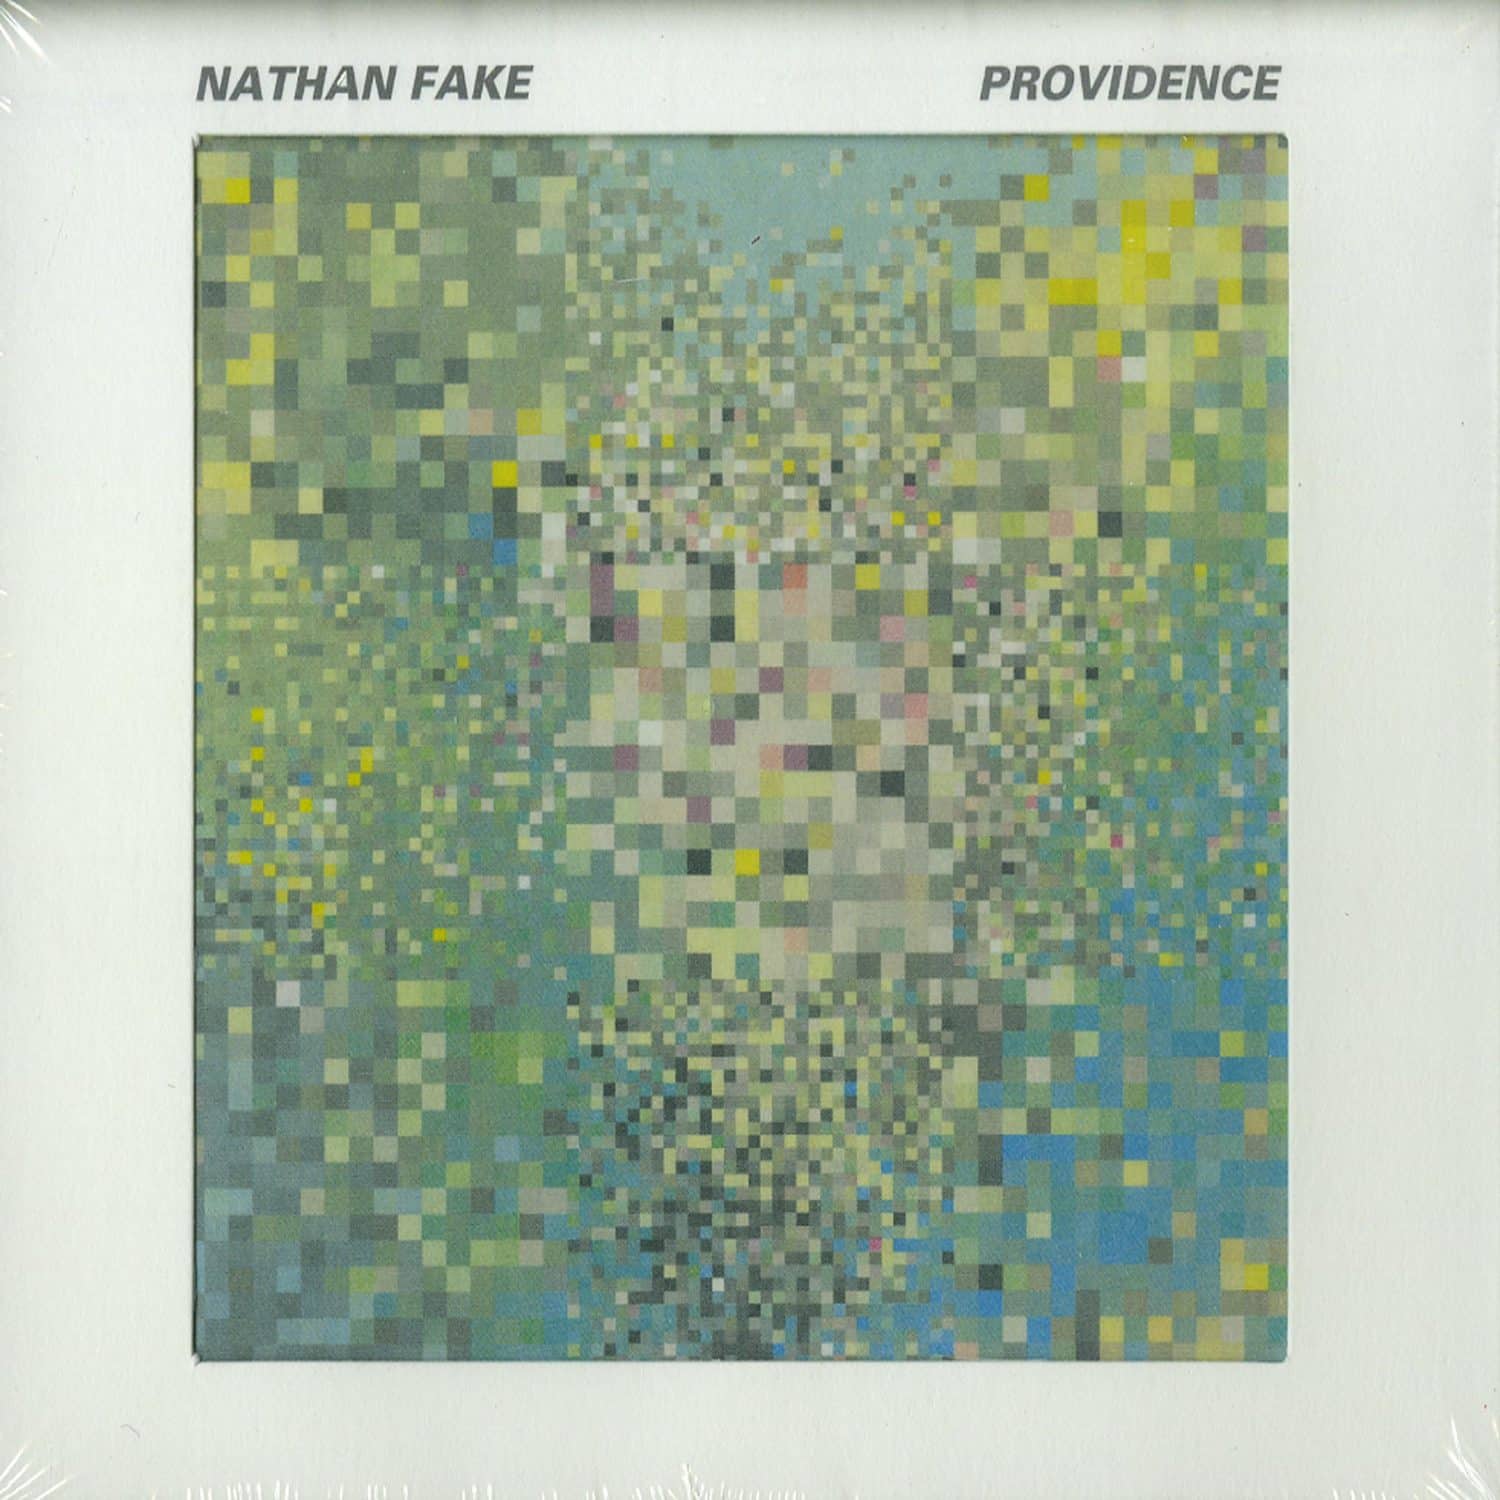 Nathan Fake - PROVIDENCE 